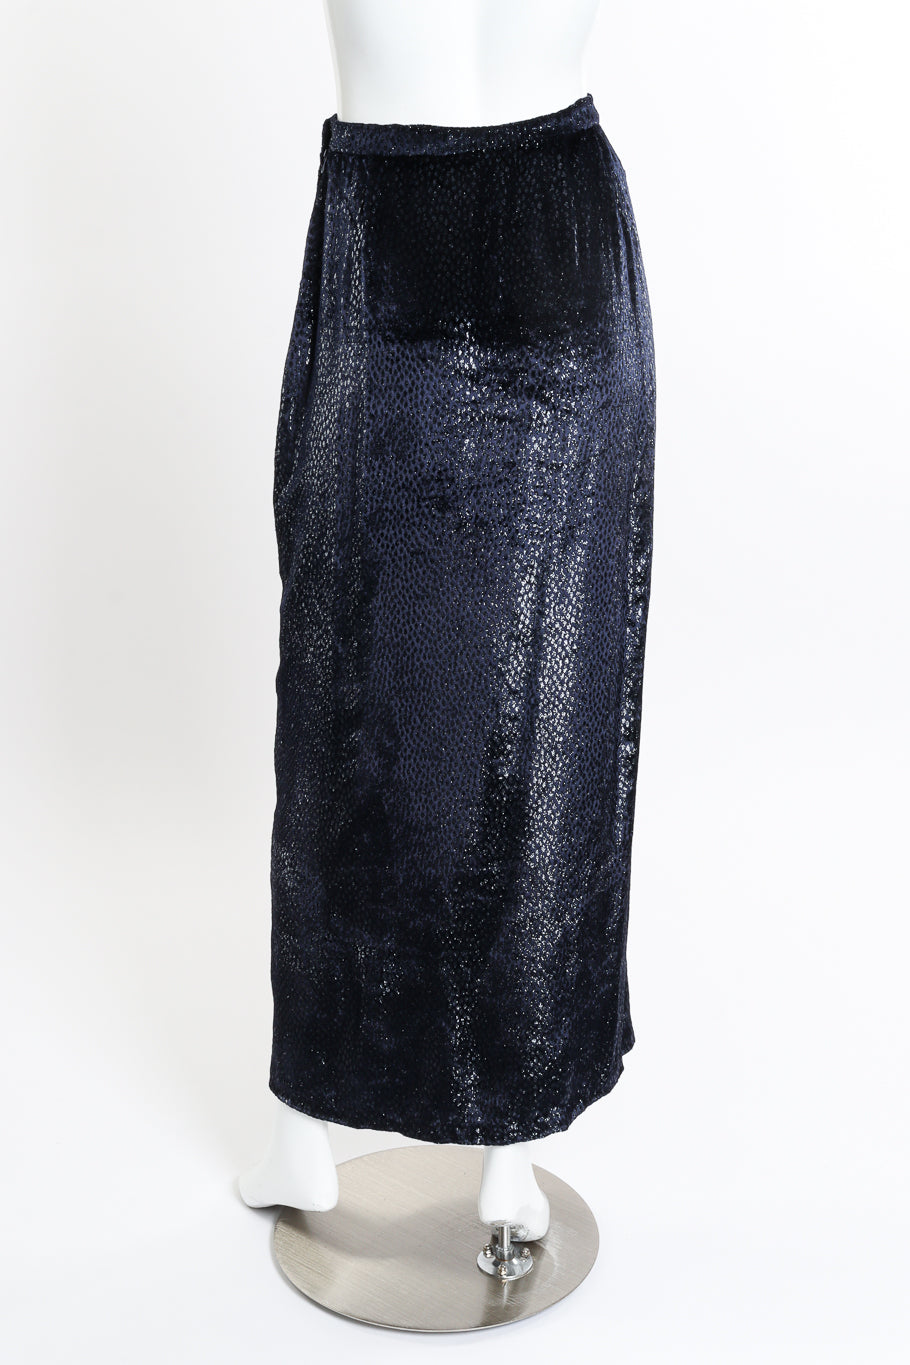 Vicky Tiel Metallic Silk Velvet Skirt back on mannequin @recessla